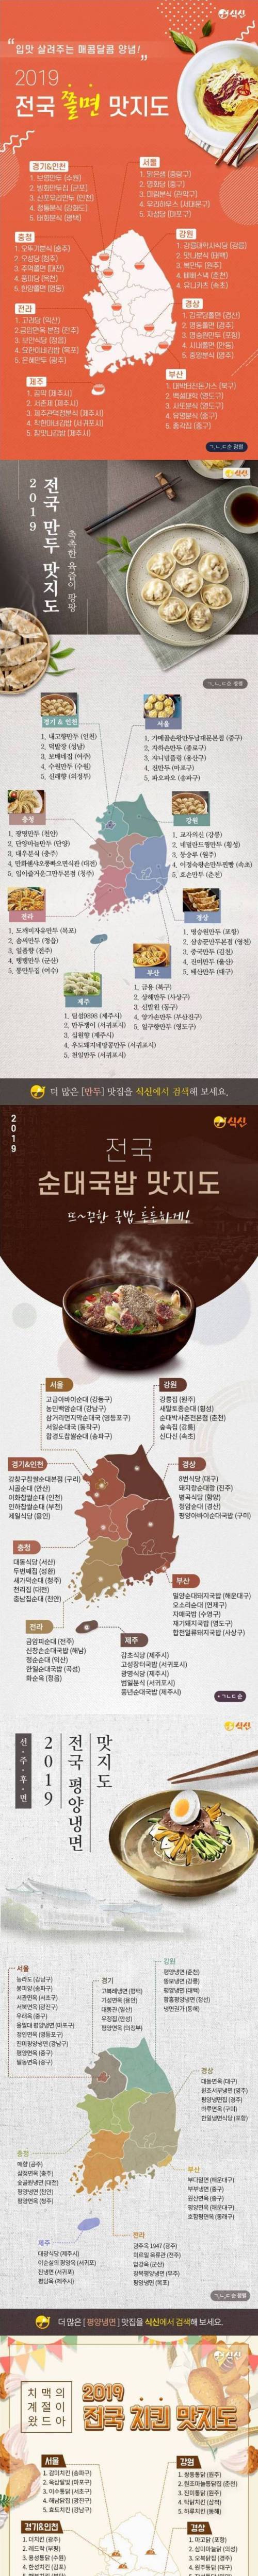 [스압] 전국 맛집리스트 (쫄면, 만두, 순대국밥, 평양냉면, 치킨)